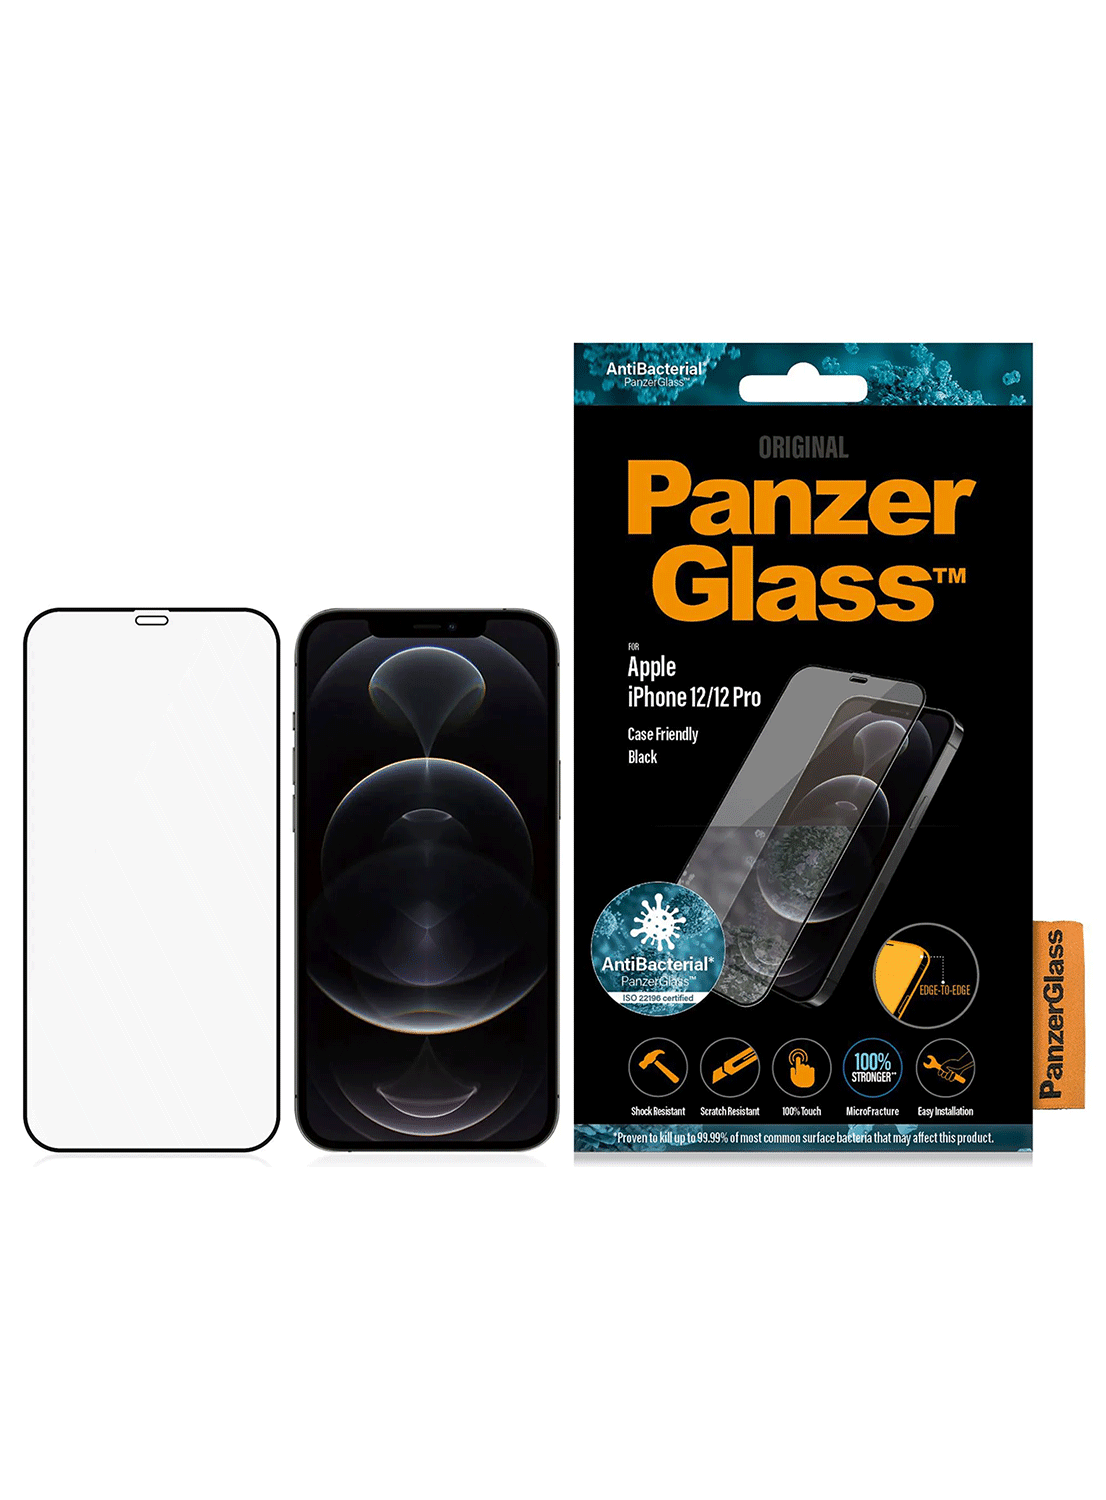 PanzerGlass Case Friendly Black iPhone 12 / 12 Pro Black-Transparent - CarbonPhone